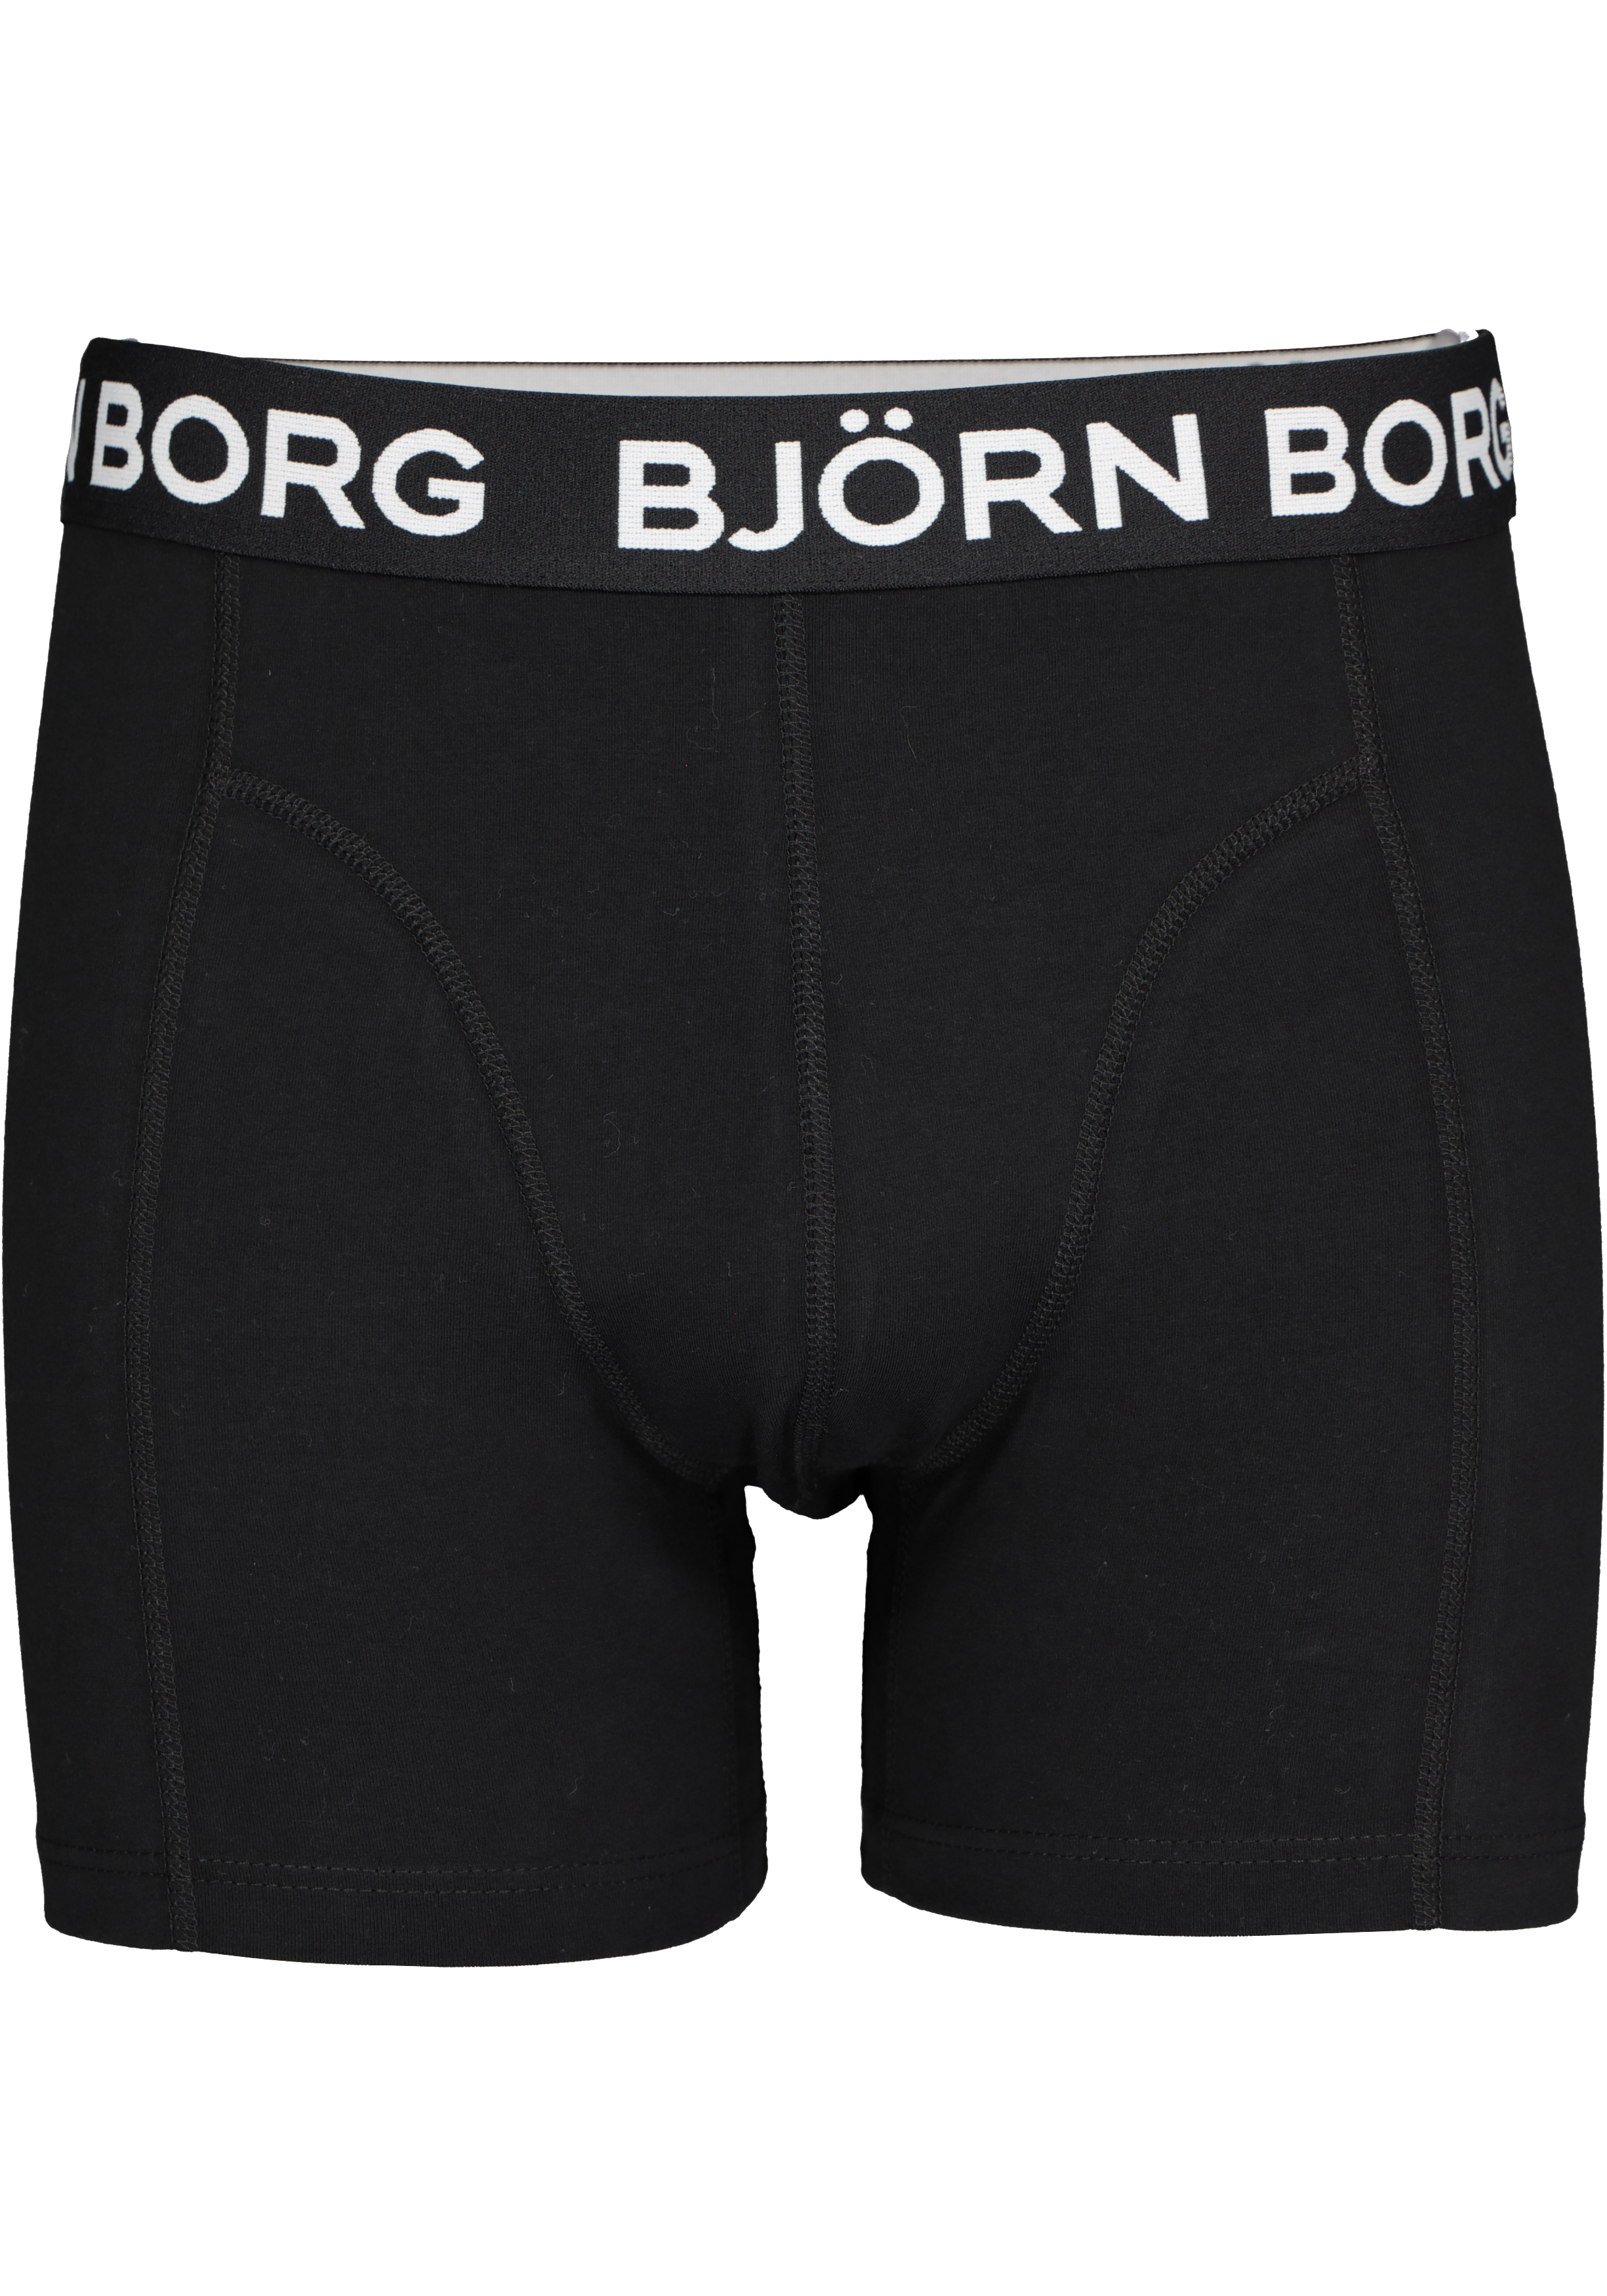 mat stopcontact in het geheim Bjorn Borg boxershorts Core (2-pack), heren boxers normale lengte, zwart -  Shop de nieuwste voorjaarsmode